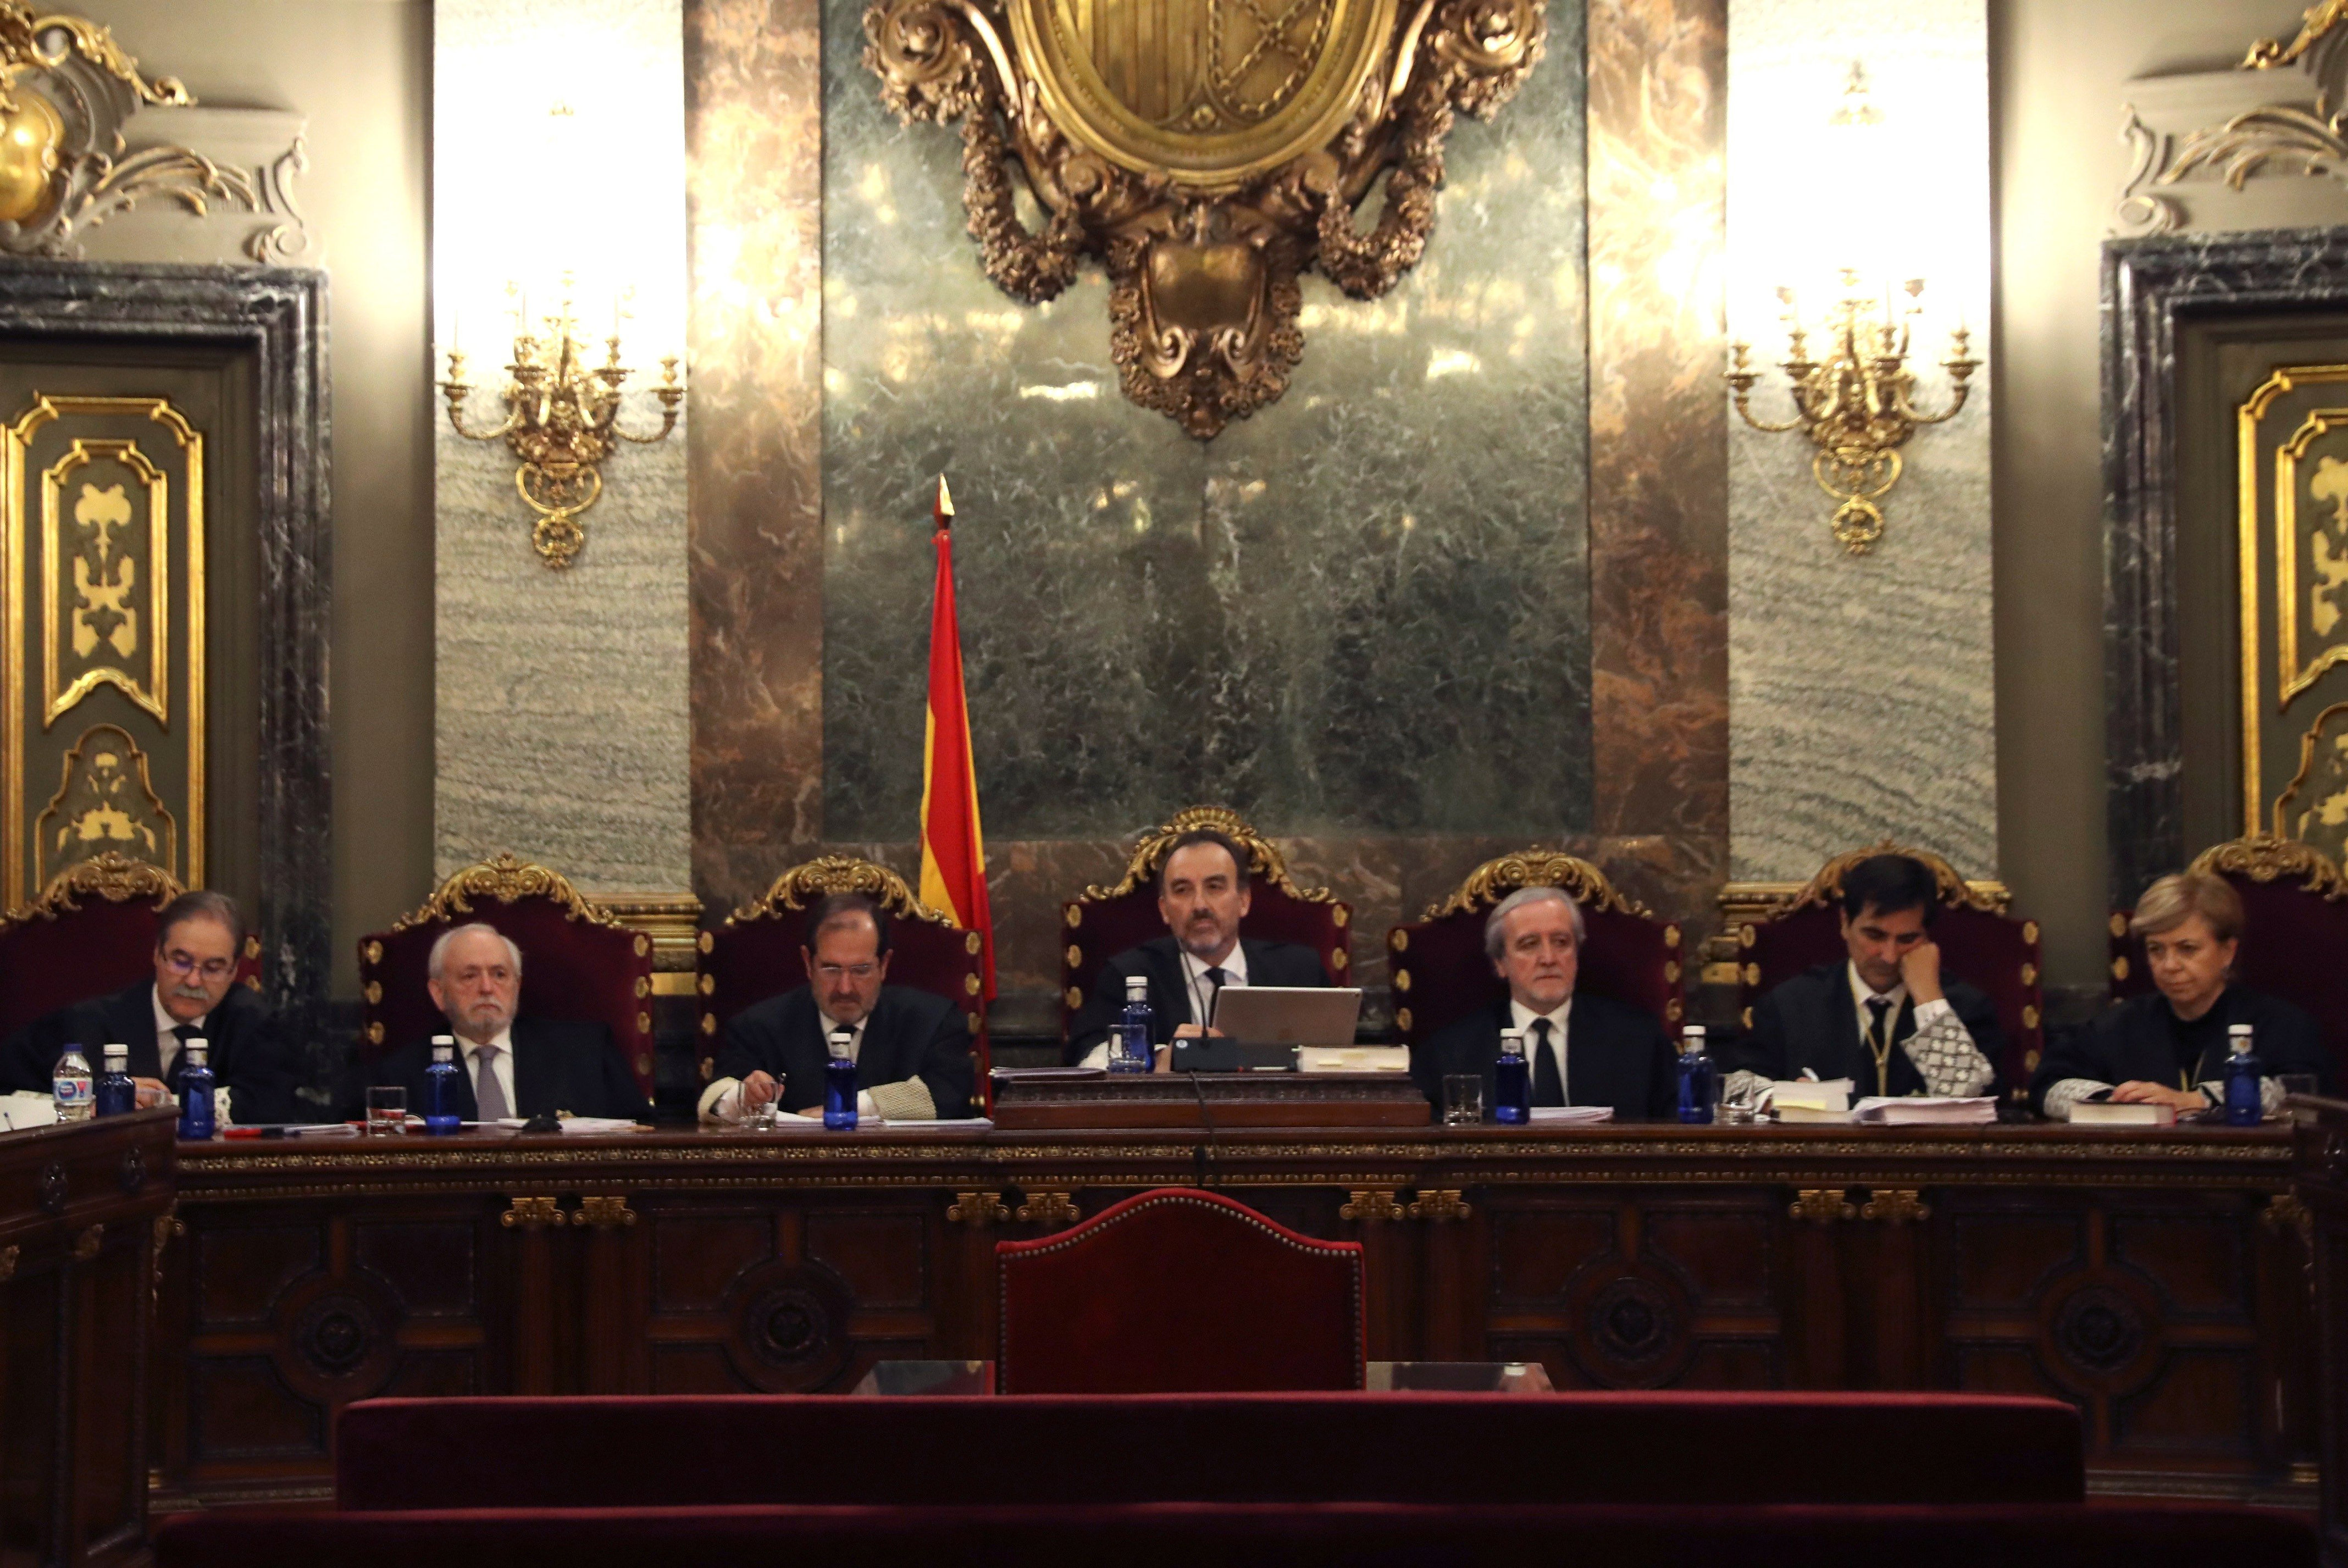 Testimonis proposats per Vox no declaren perquè estan sent investigats pel jutjat 13 de Barcelona